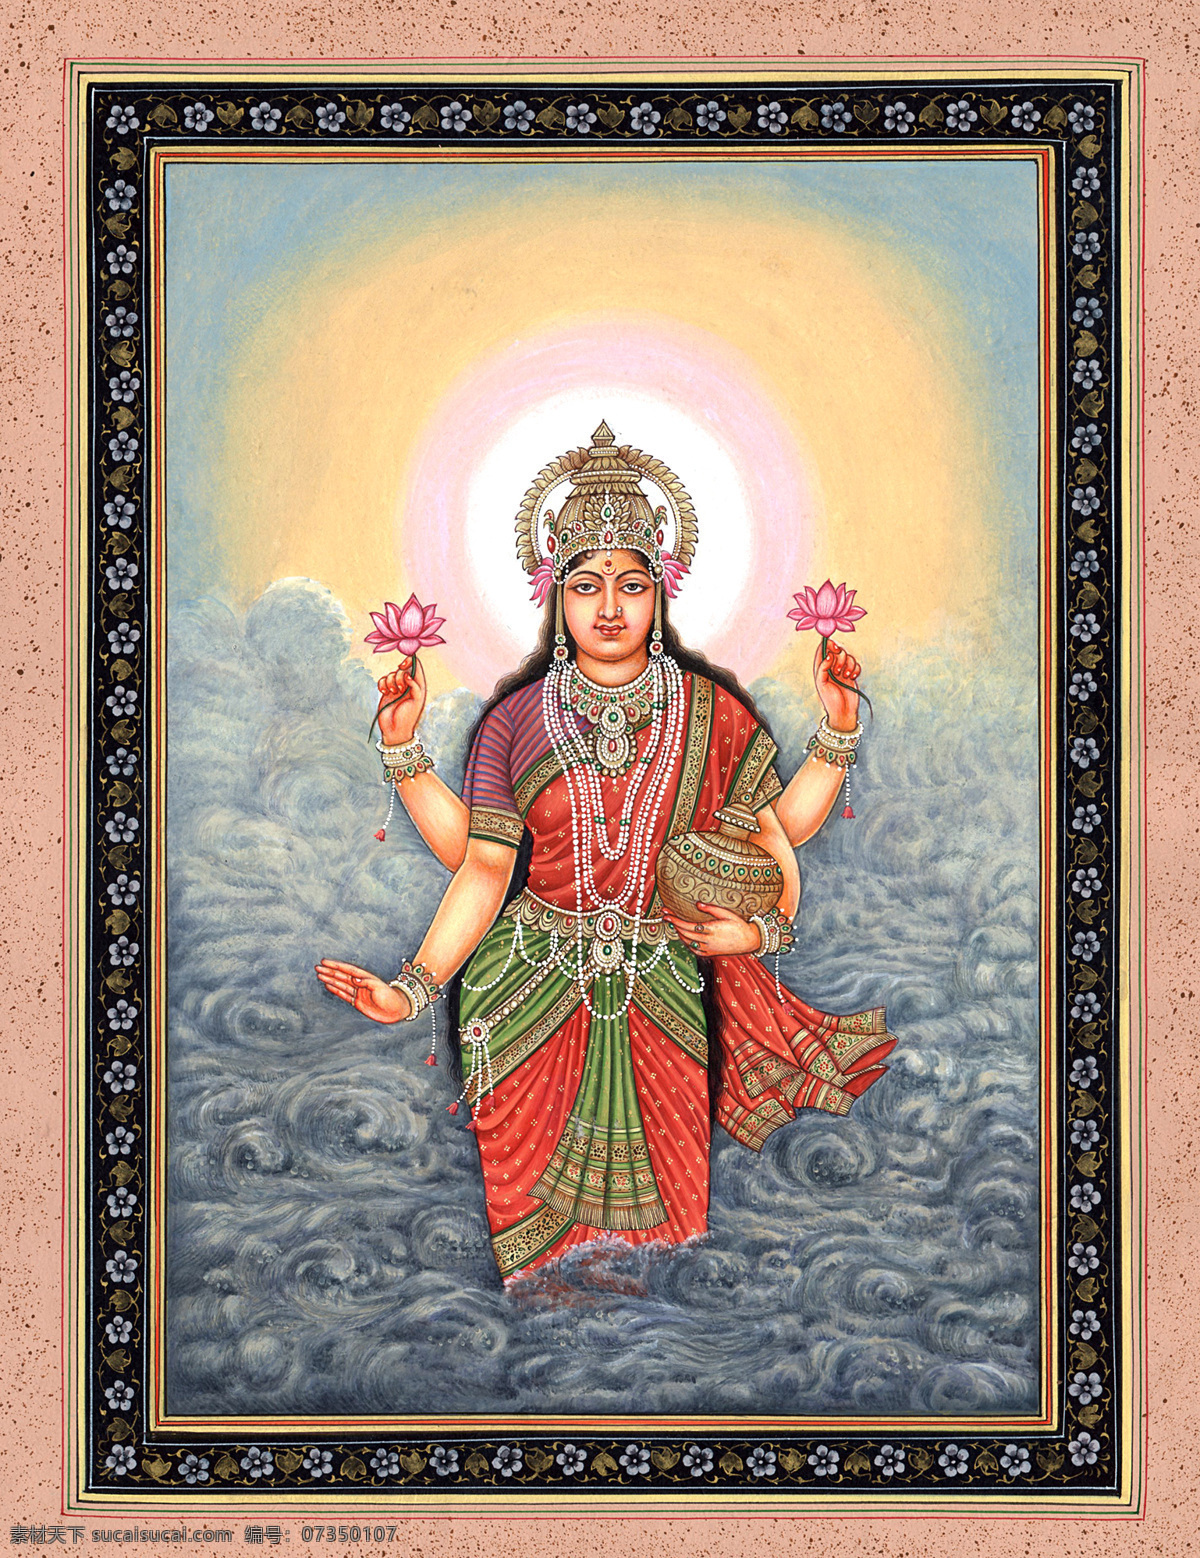 印度神像 神像 人物 太阳女神 宗教信仰 宗教艺术 文化艺术 传统文化